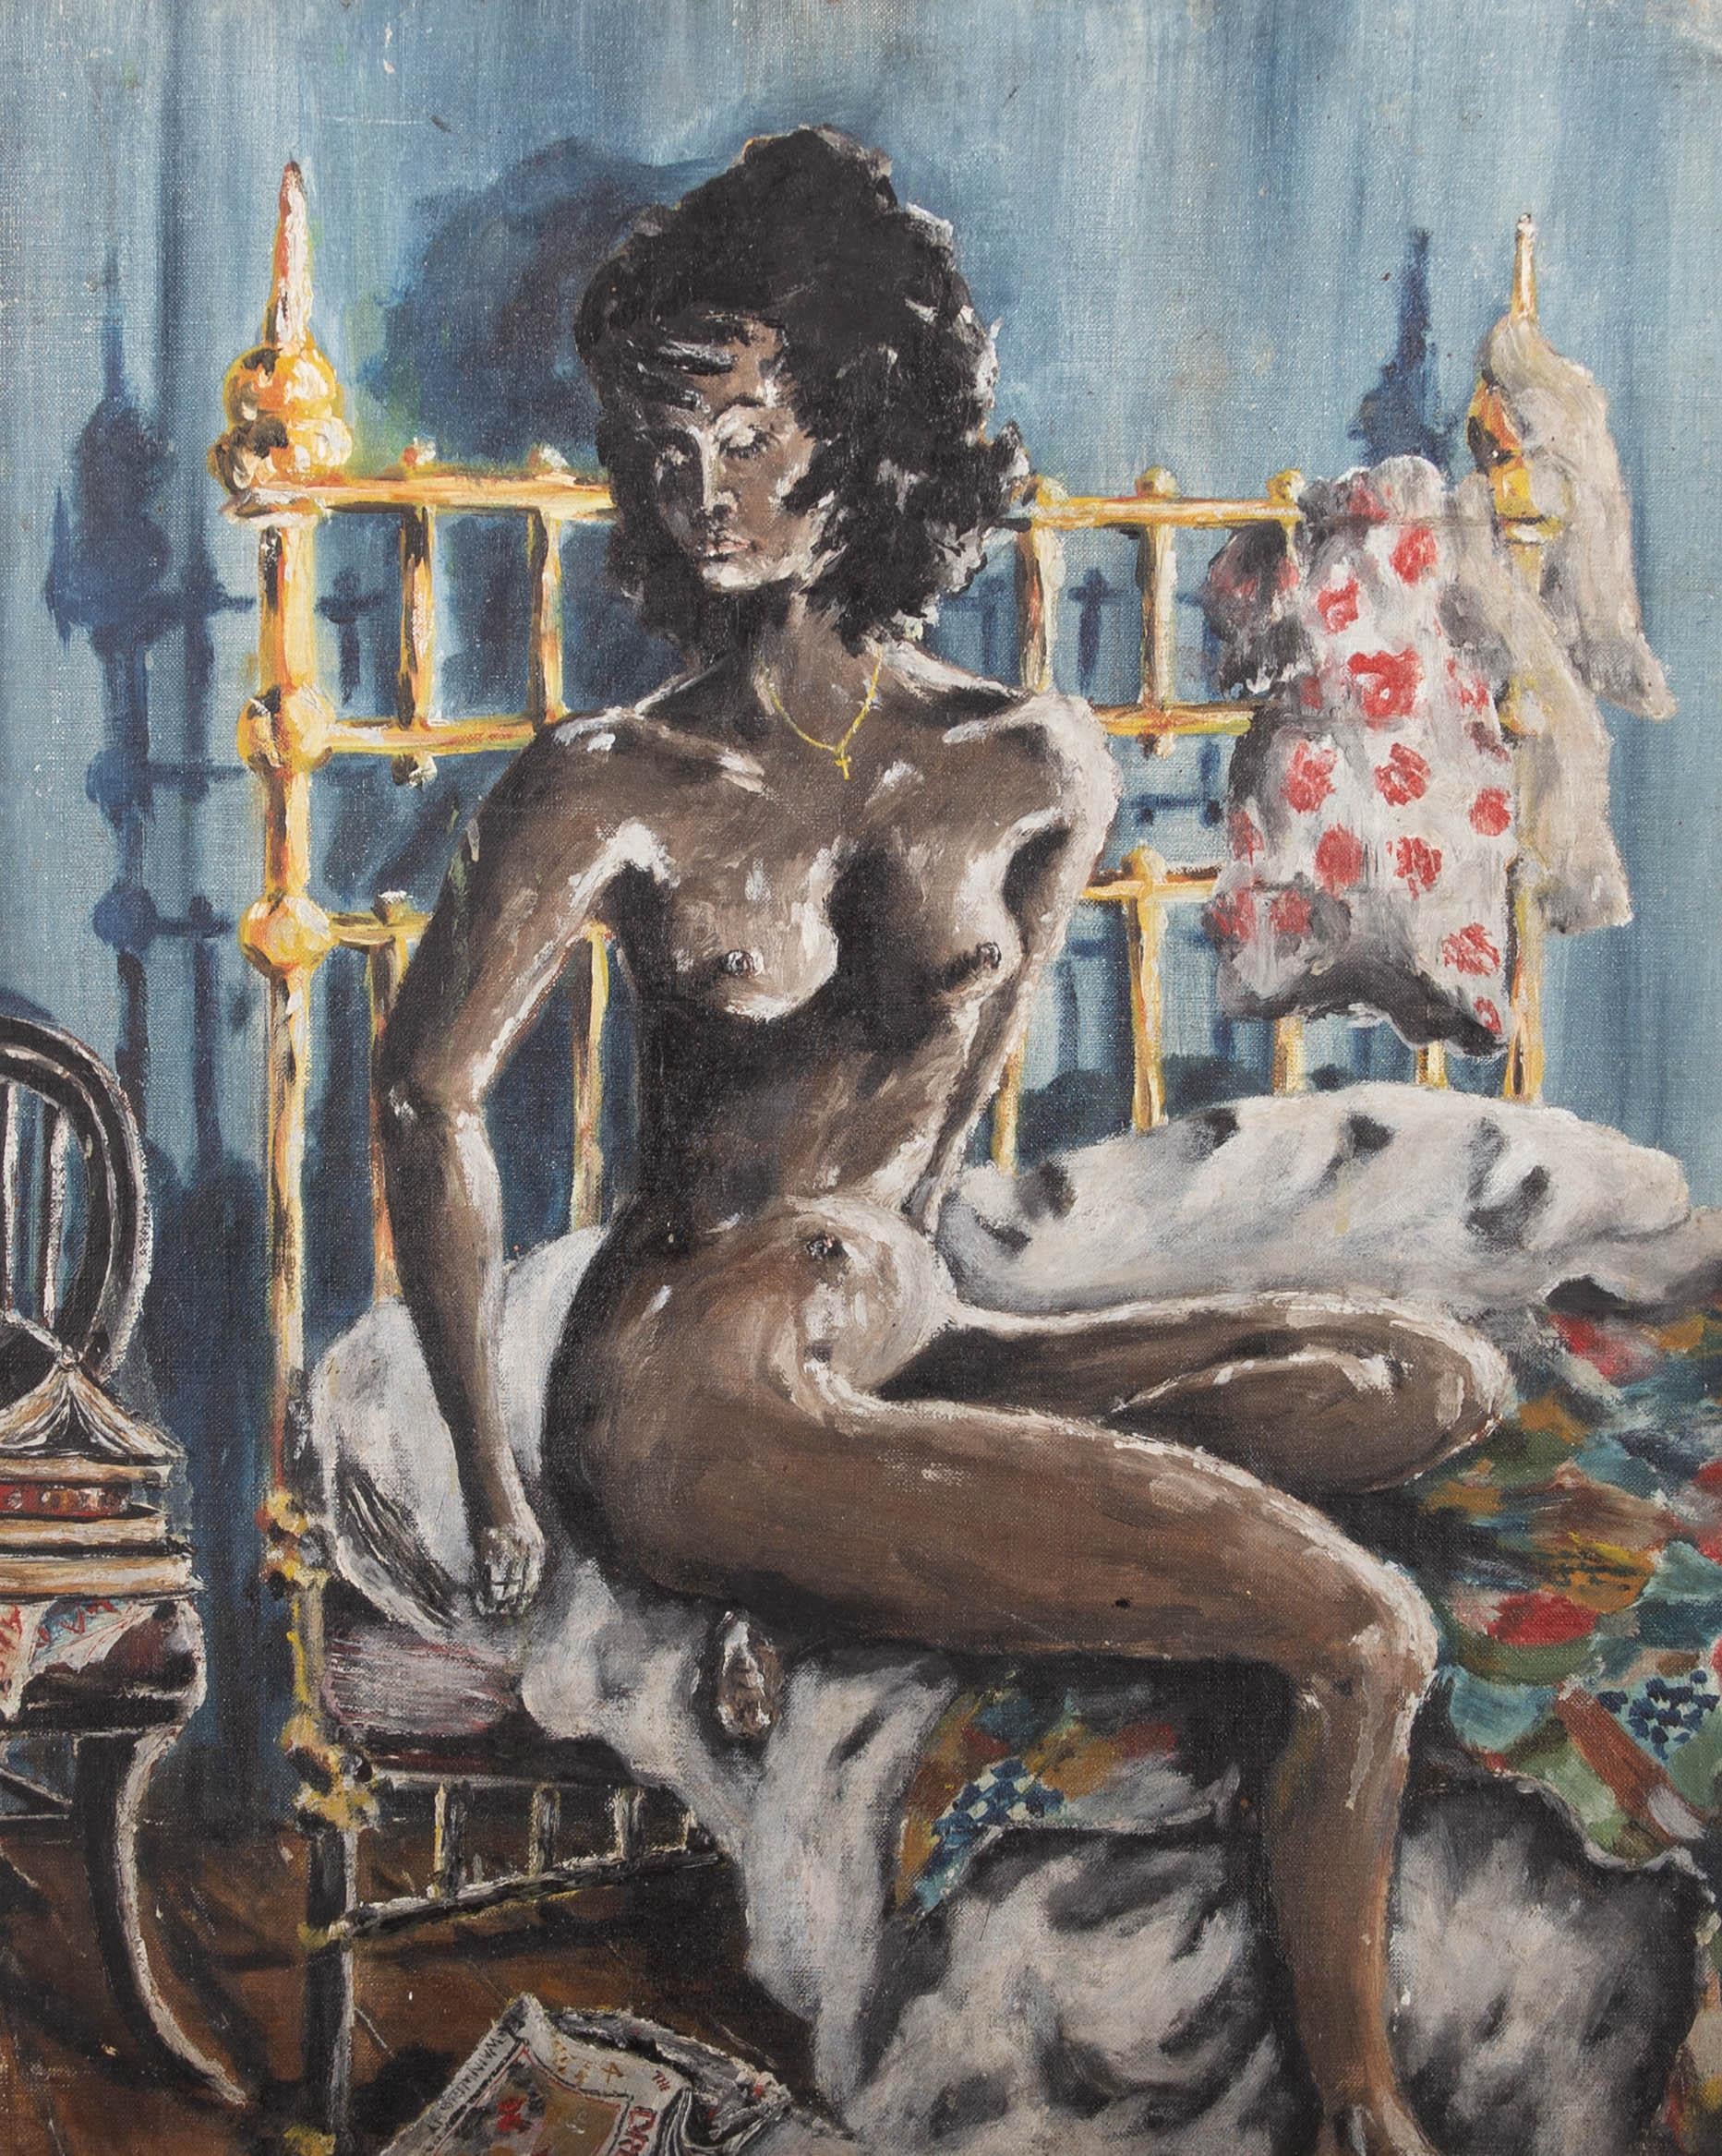 Portrait Painting Unknown - Huile du milieu du XXe siècle - Portrait d'une figure féminine nue dans une chambre